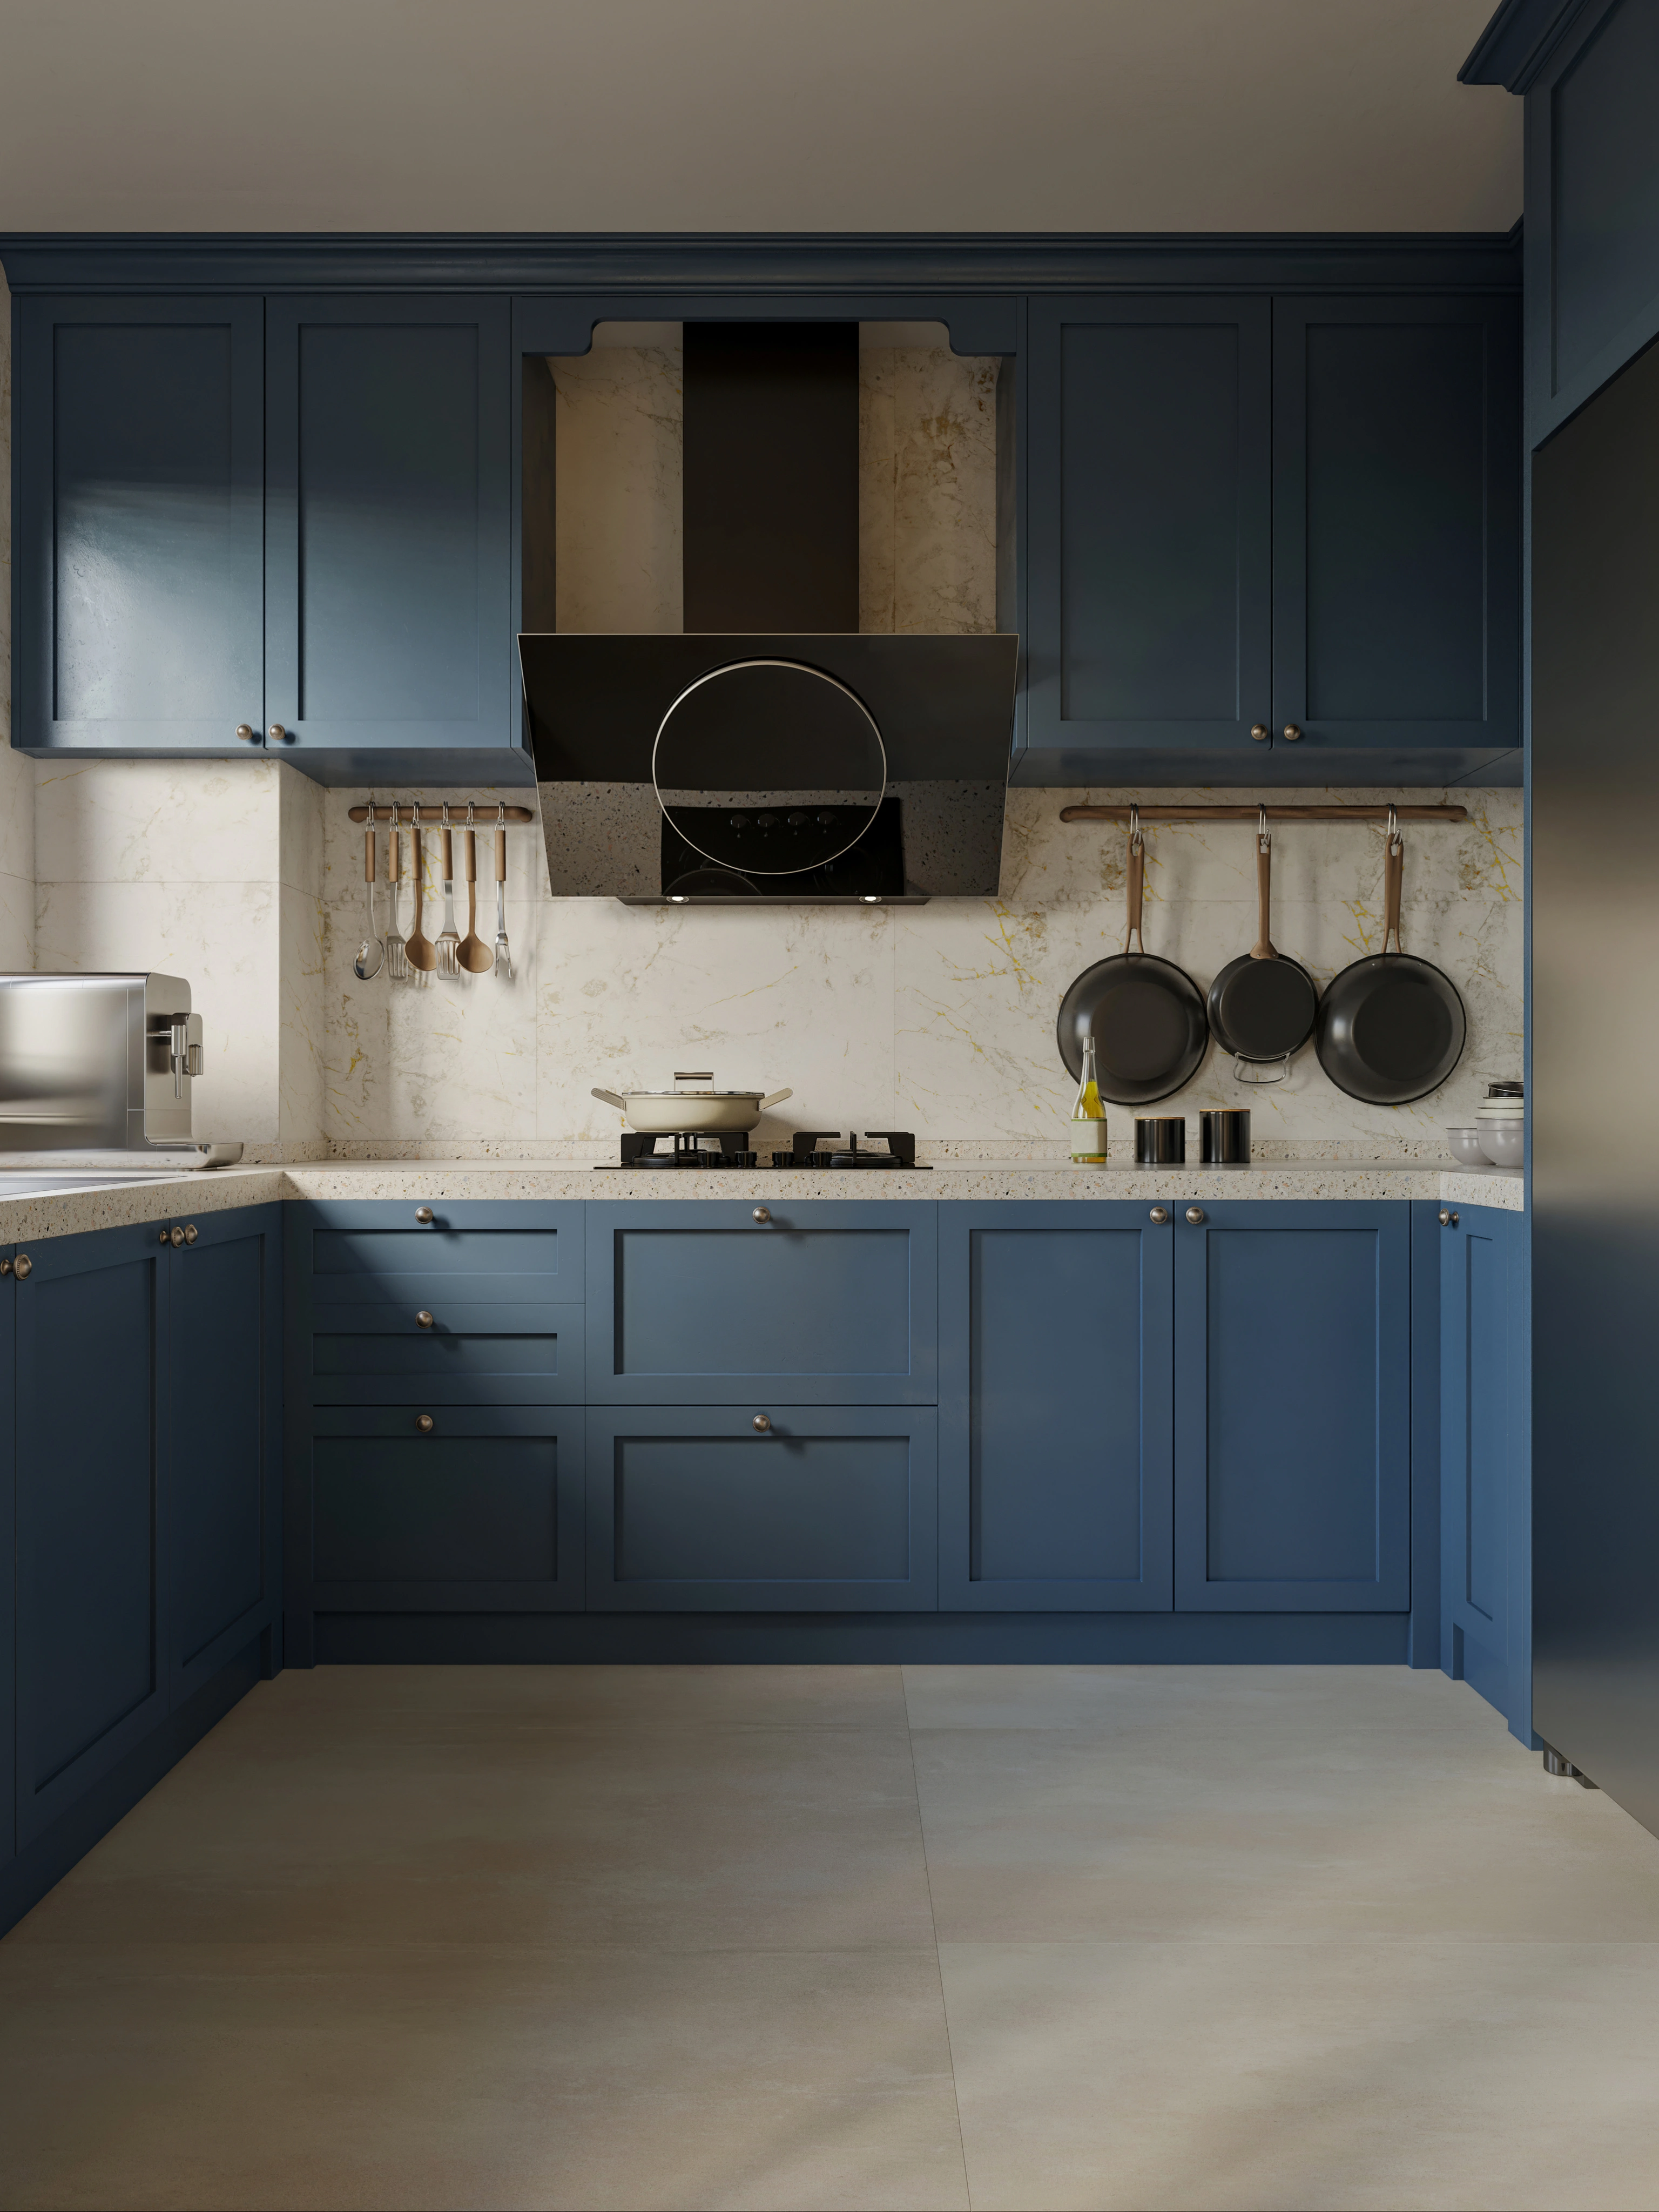 Inspiracja prezentująca kuchnię w kolorze niebieskim, styl marynistyczny.